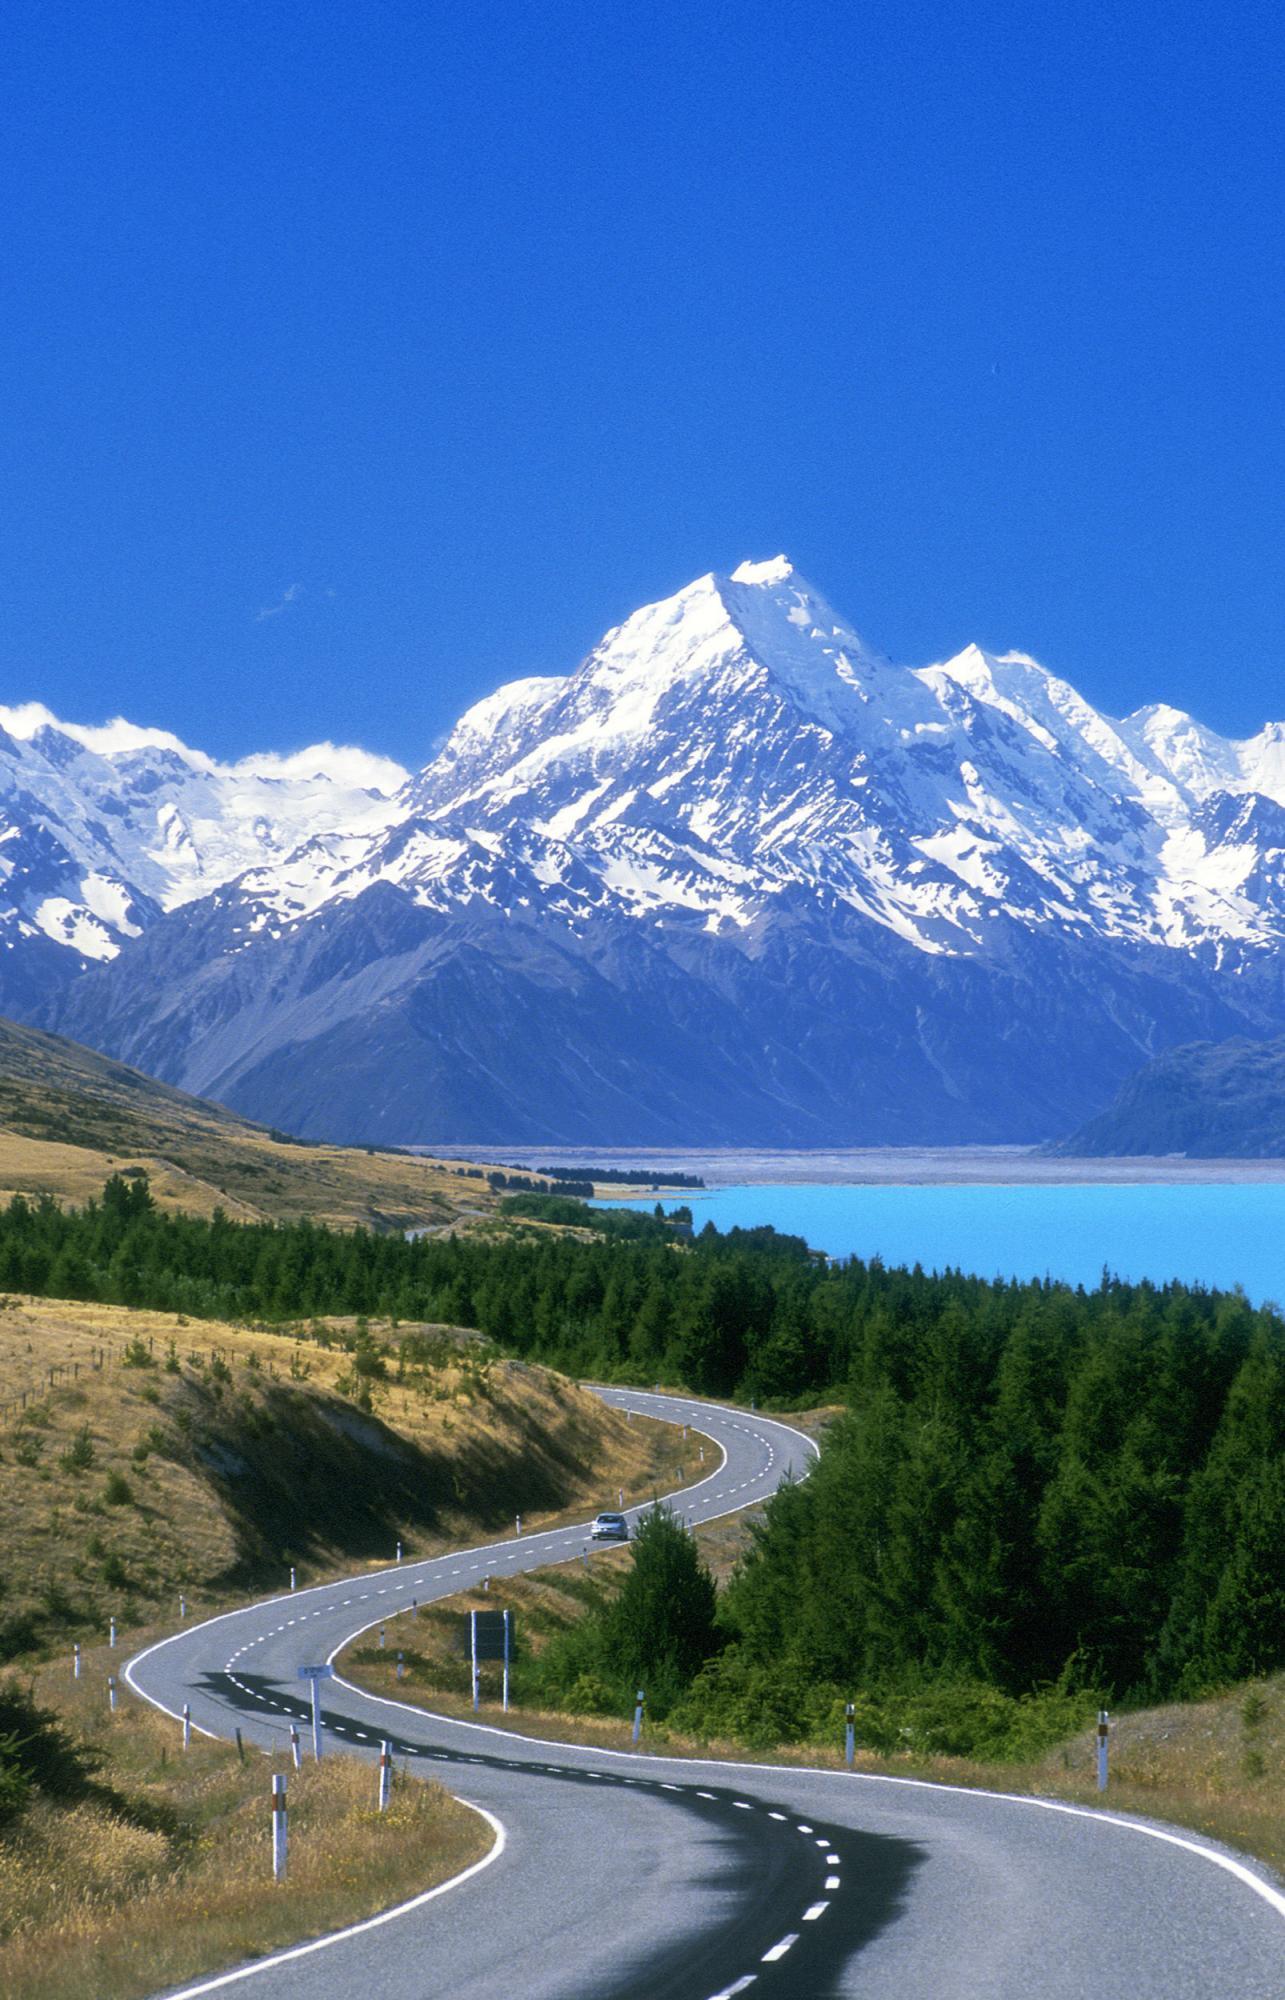  Thiên đường hạ giới New Zealand